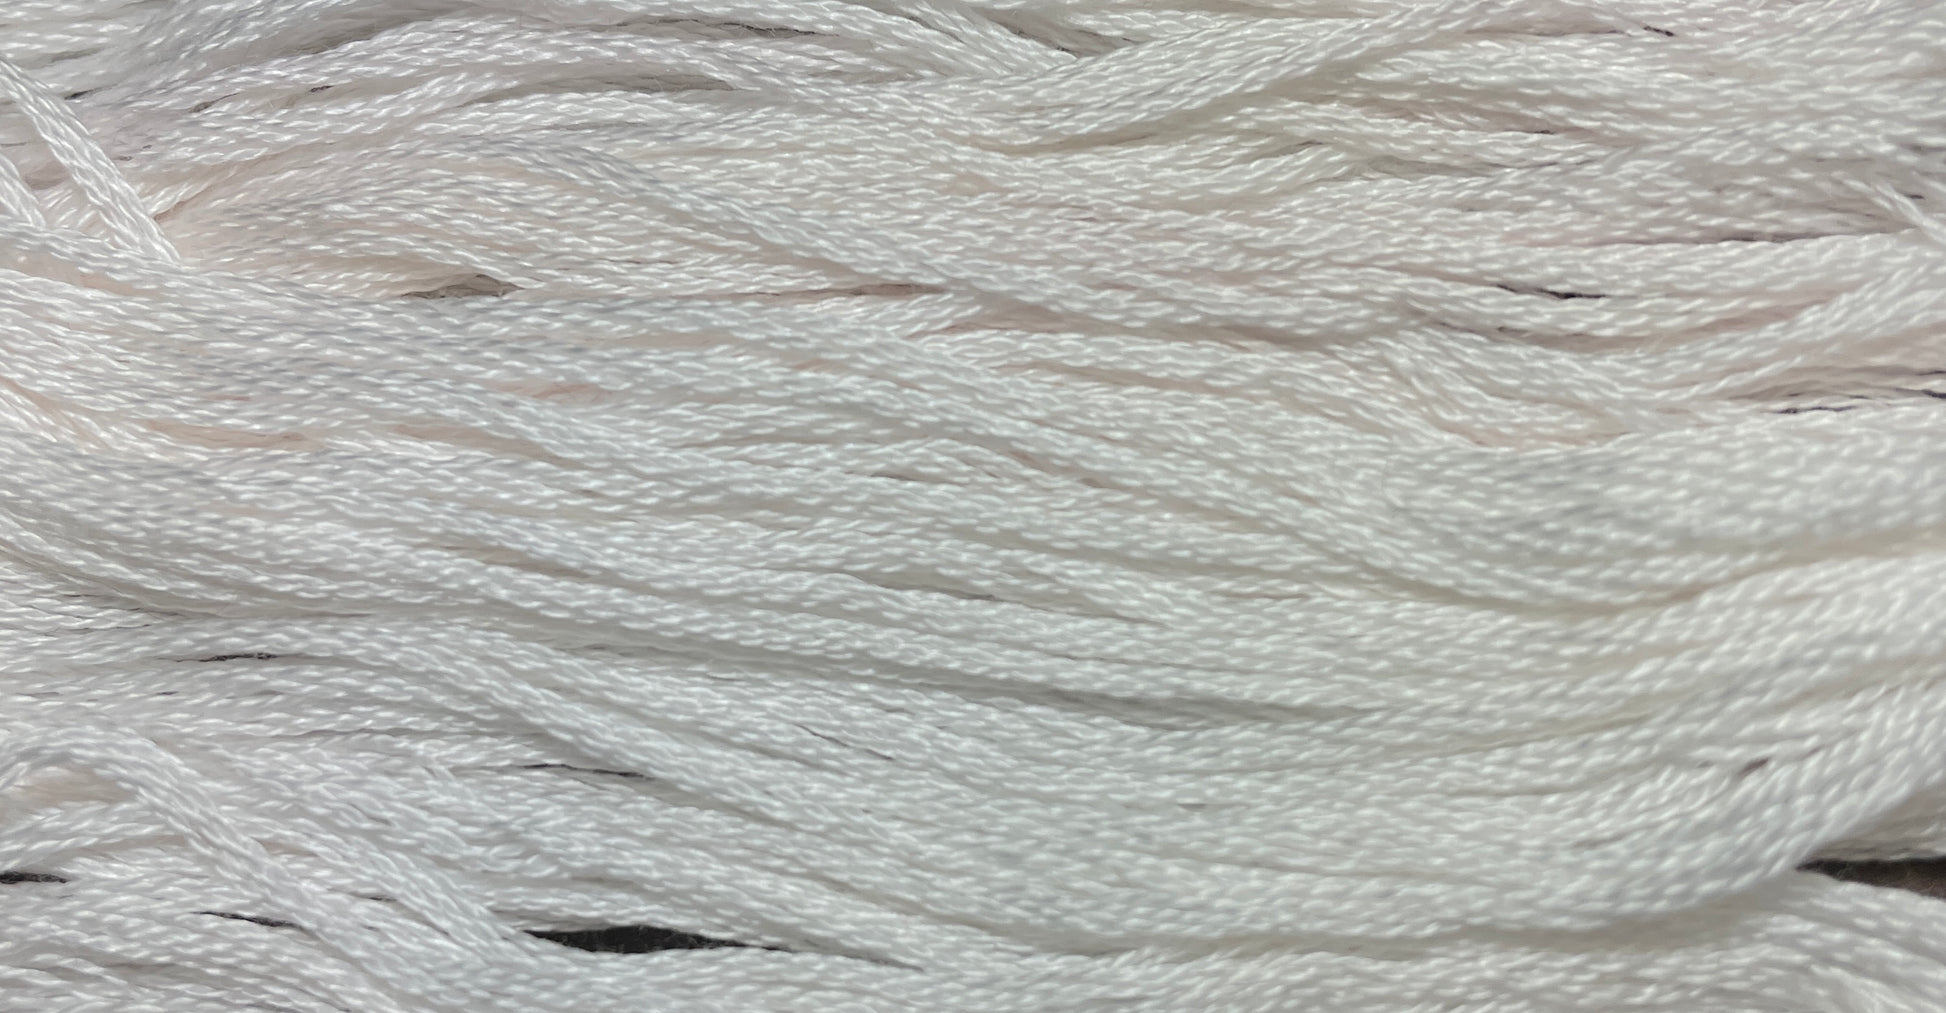 Cotton Candy - Gentle Arts Cotton Thread - 5 yard Skein - Cross Stitch Floss, Thread & Floss, Thread & Floss, The Crafty Grimalkin - A Cross Stitch Store